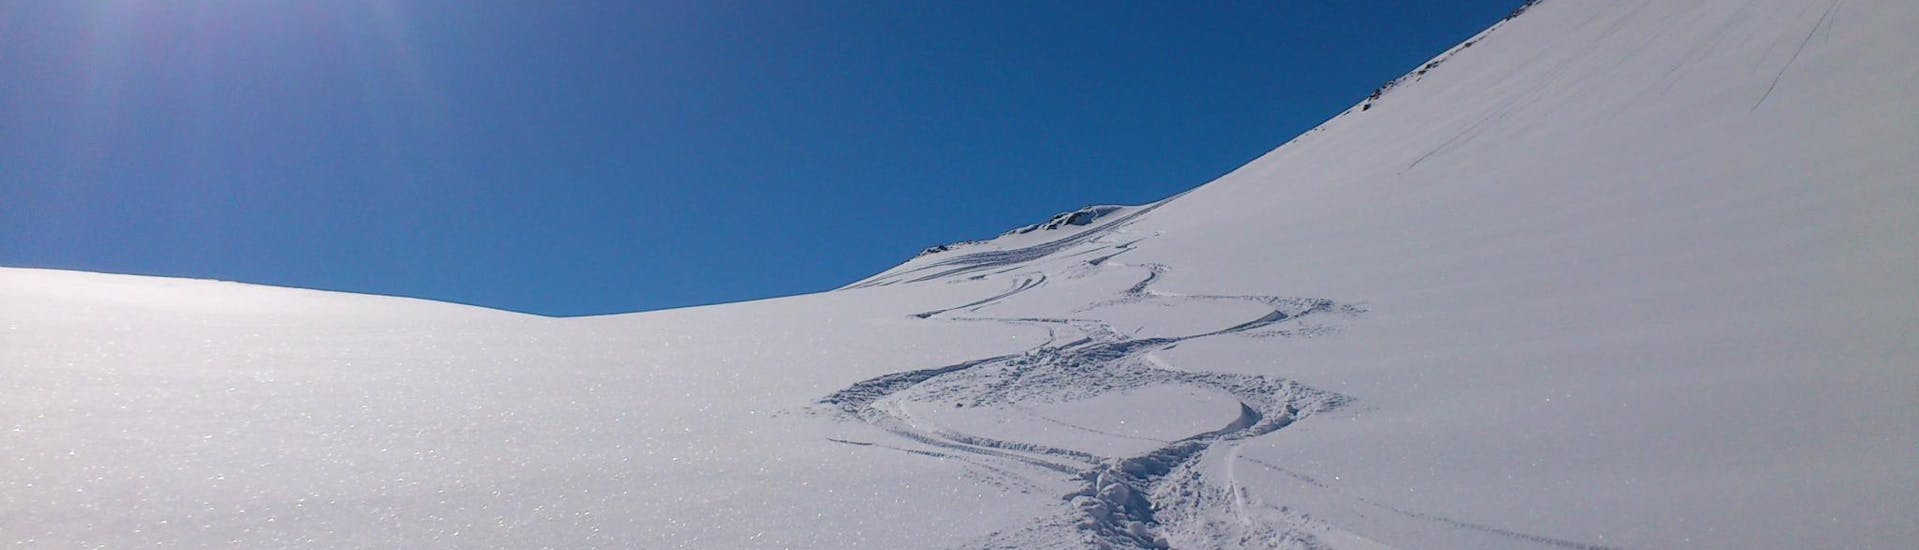 Privé Off-Piste skilessen voor alle niveaus.